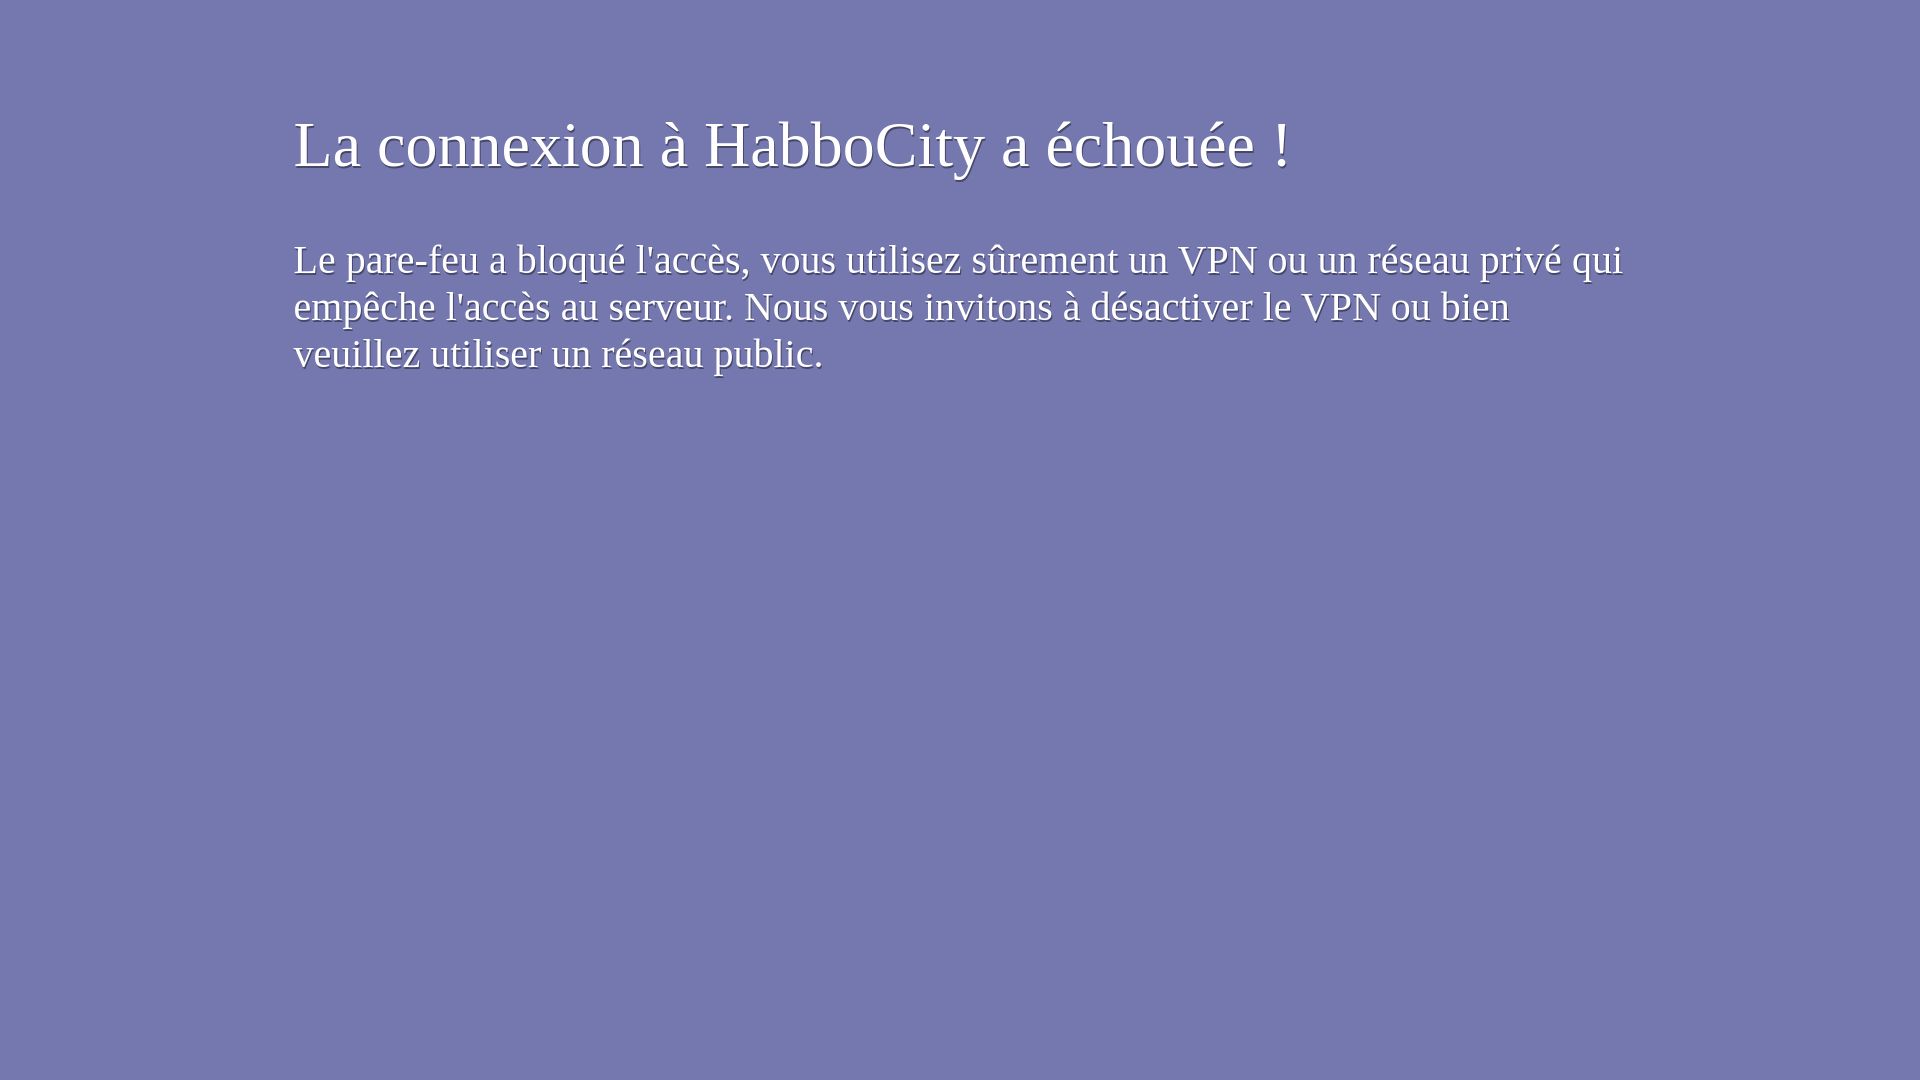 Website status habbocity.me is   ONLINE